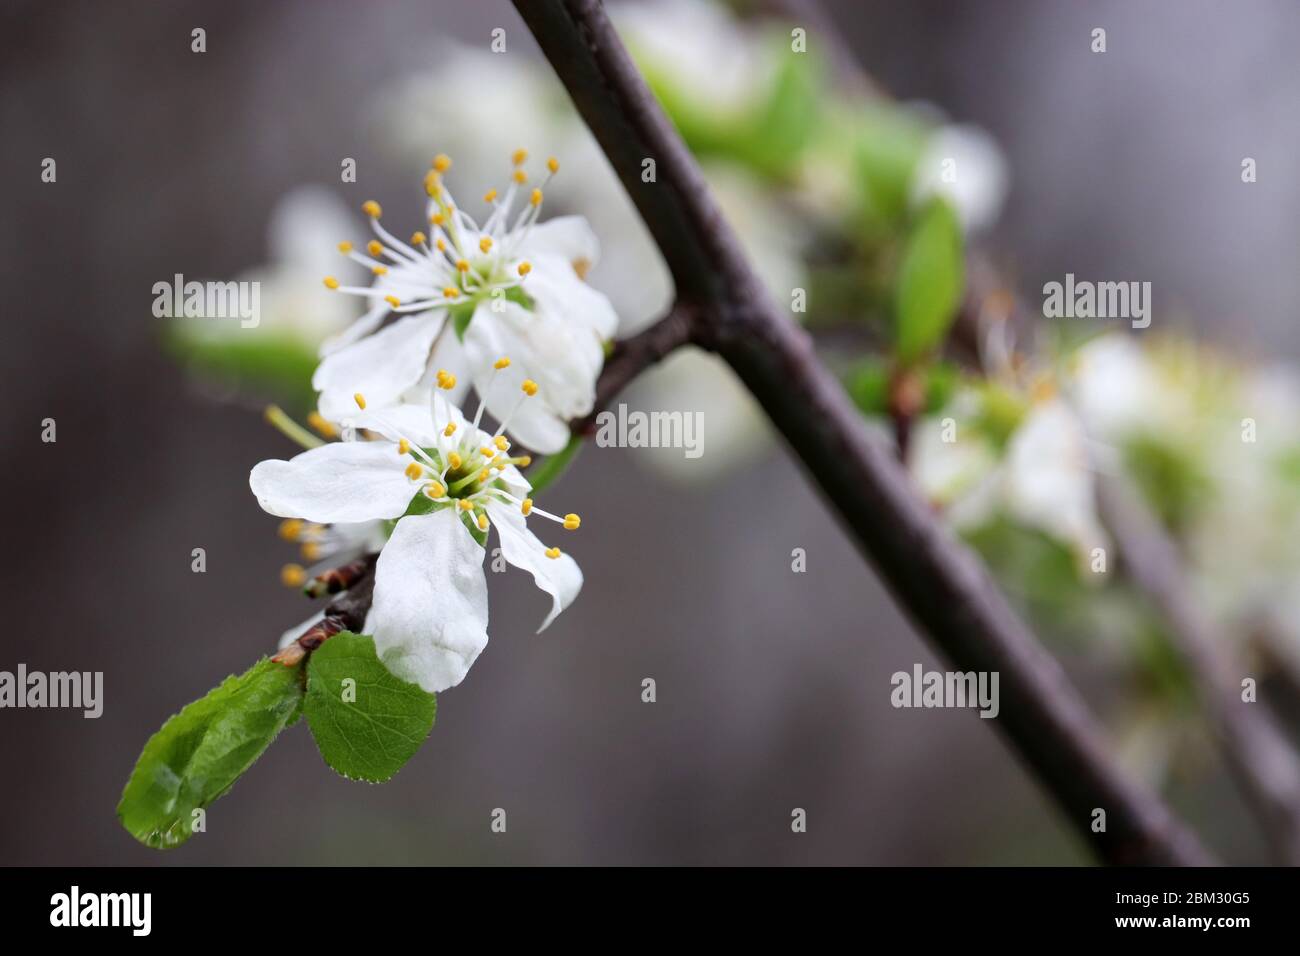 Fleur de cerisier au printemps. Fleurs blanches sur une branche dans un jardin après la pluie, couleurs douces Banque D'Images